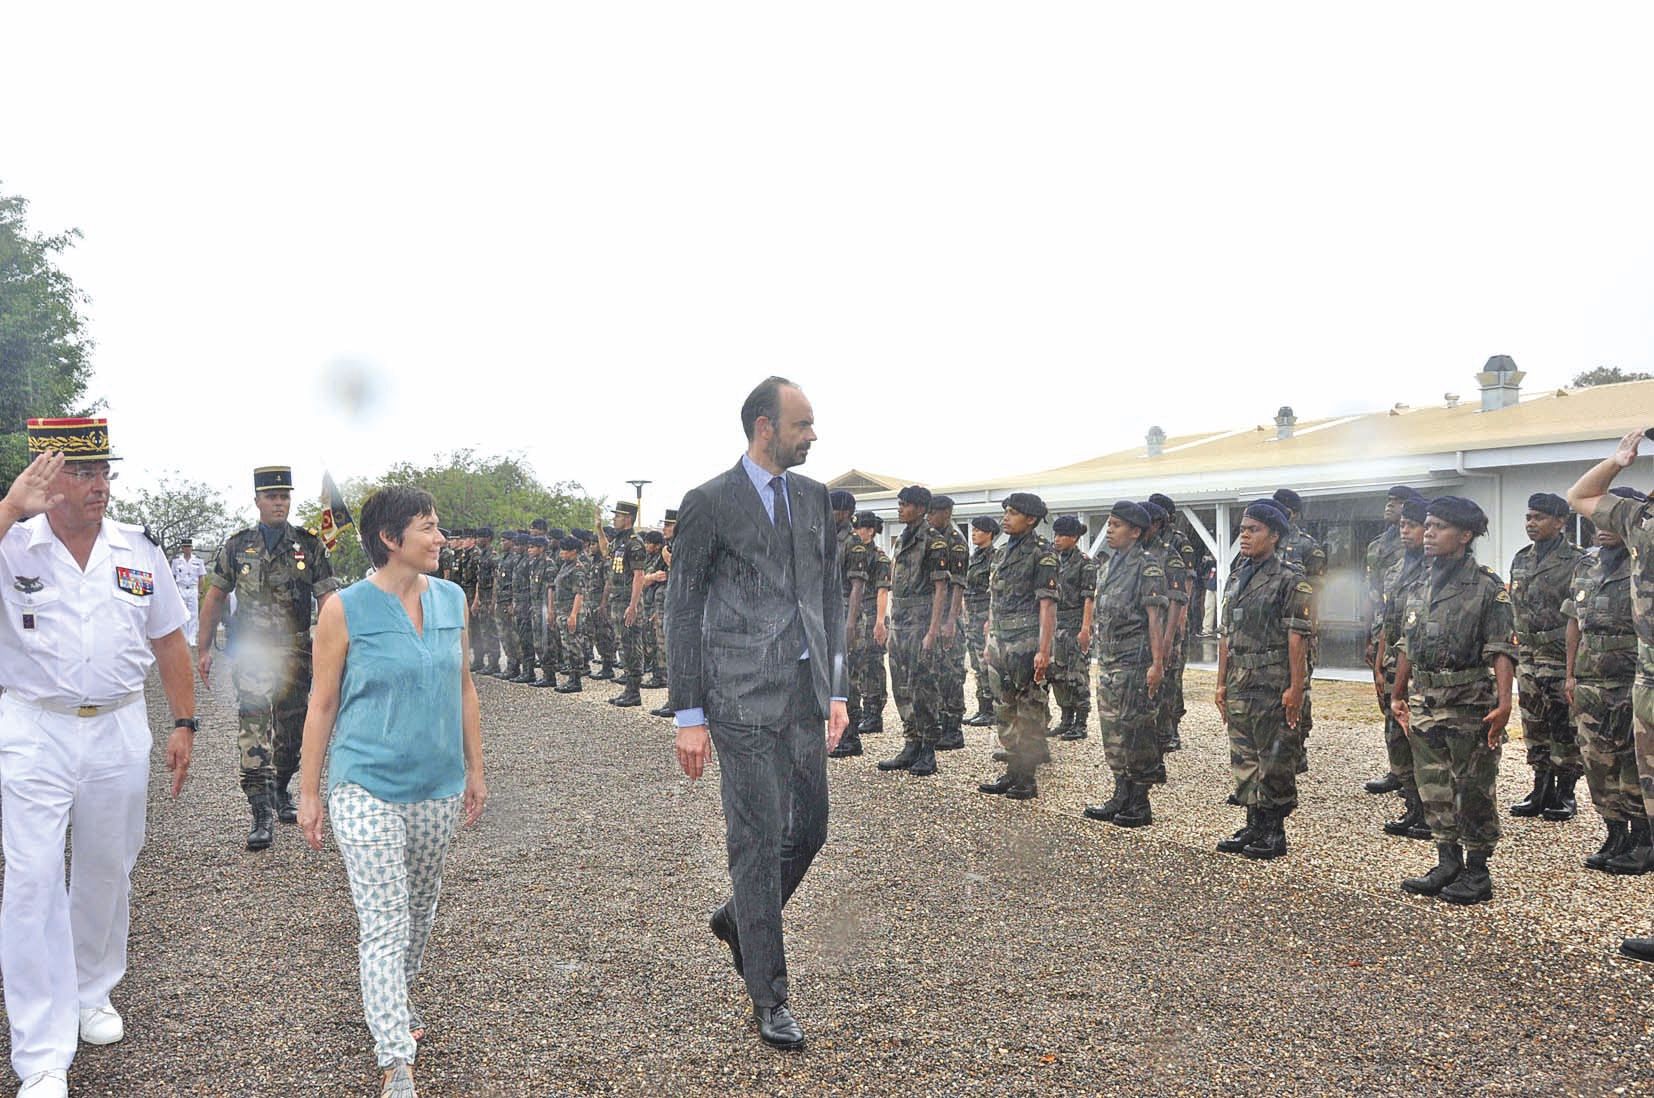 Le Premier ministre a passé les troupes en revue sous une pluie battante avant de s’acheminer vers le Foyer du soldat pour y rencontrer les jeunes.